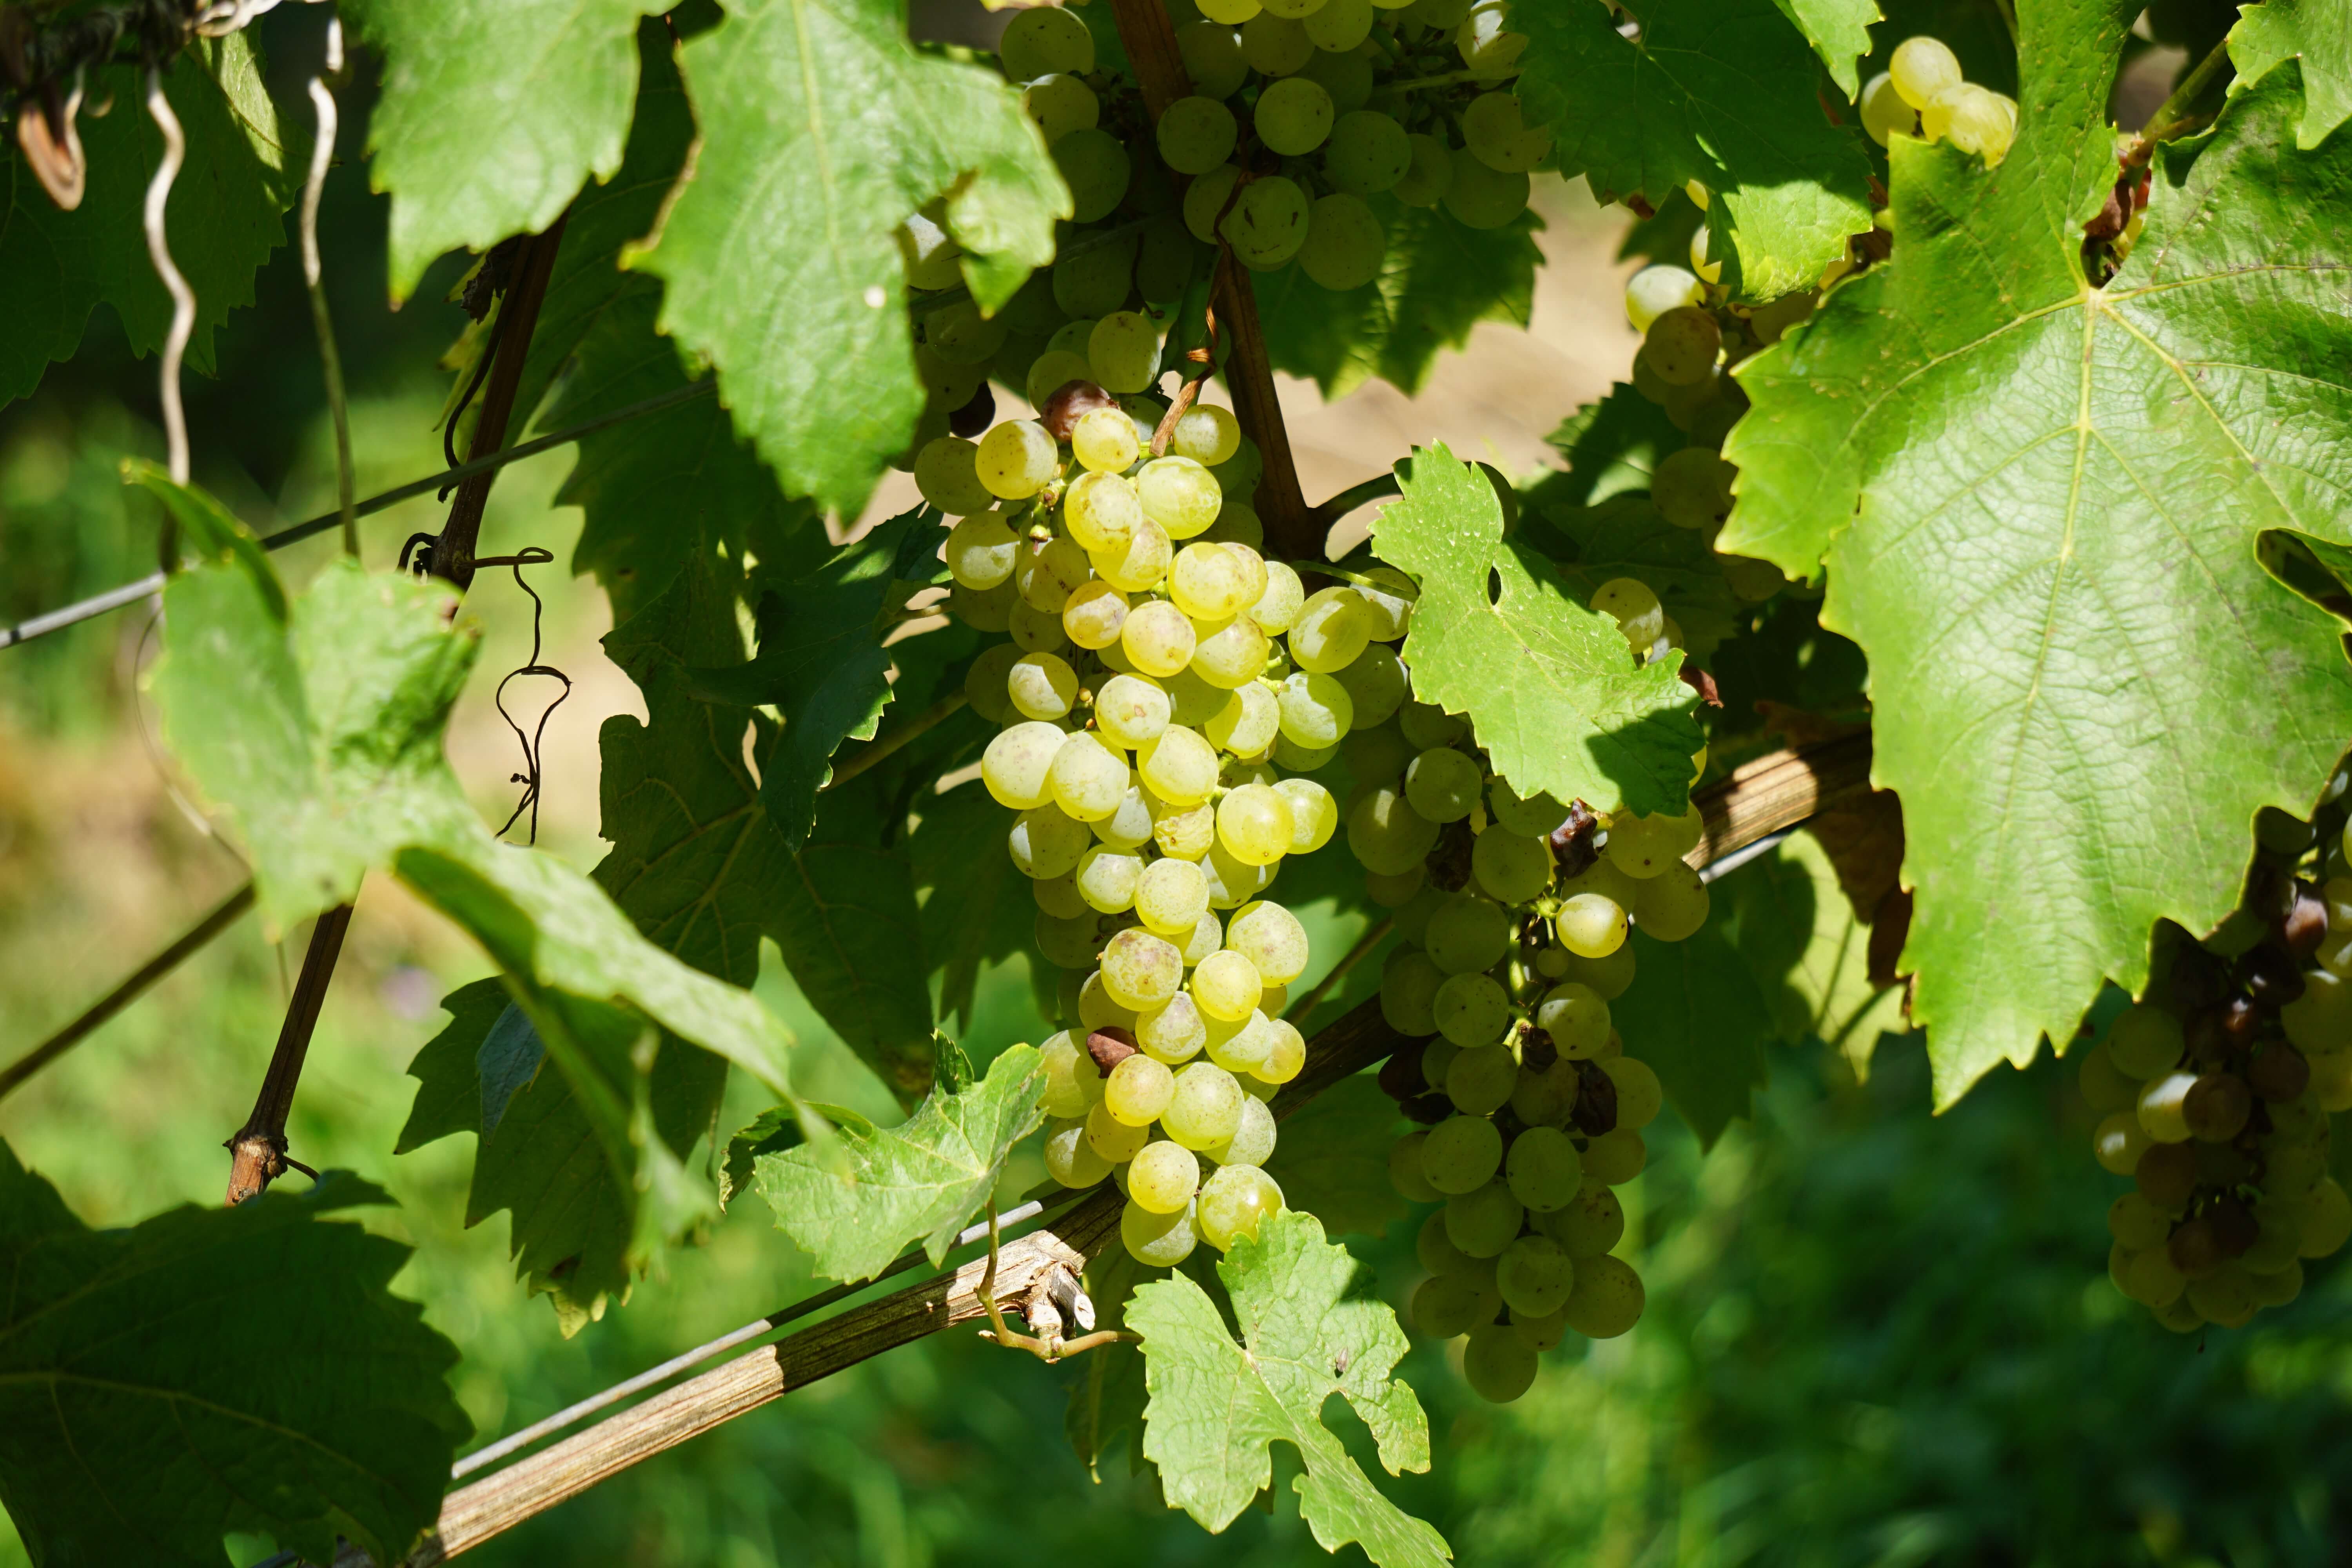 Vinná réva jako největší zdroj antioxidantů